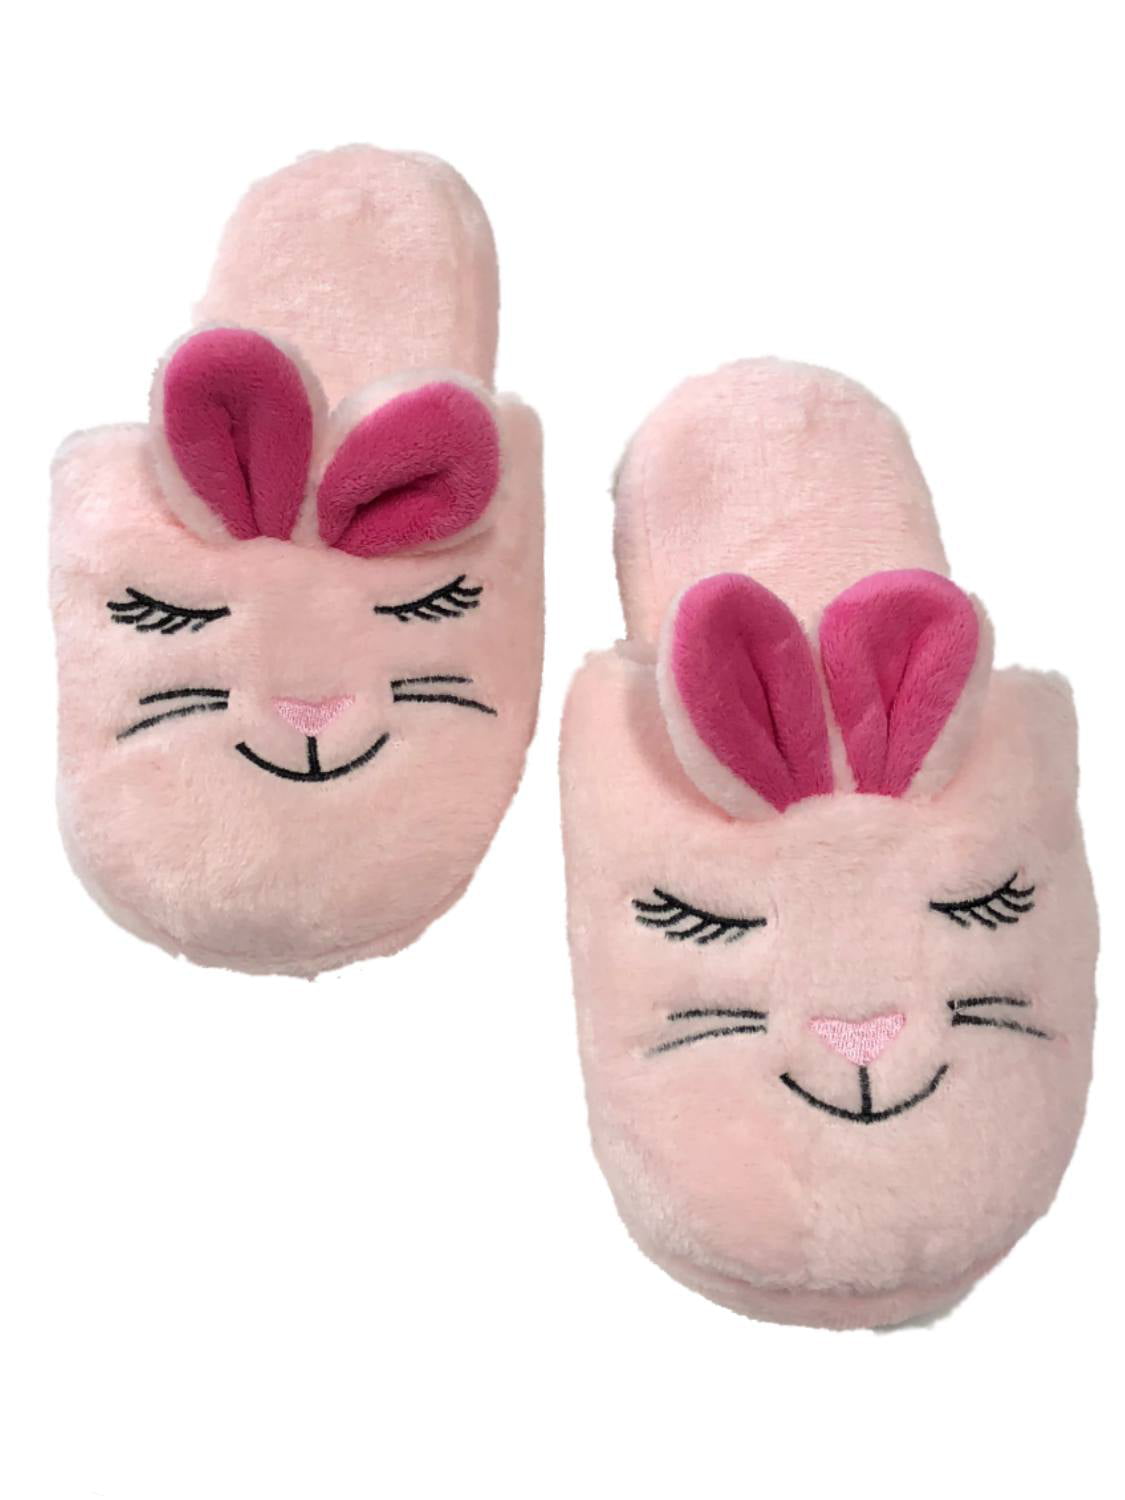 happy bunny slippers